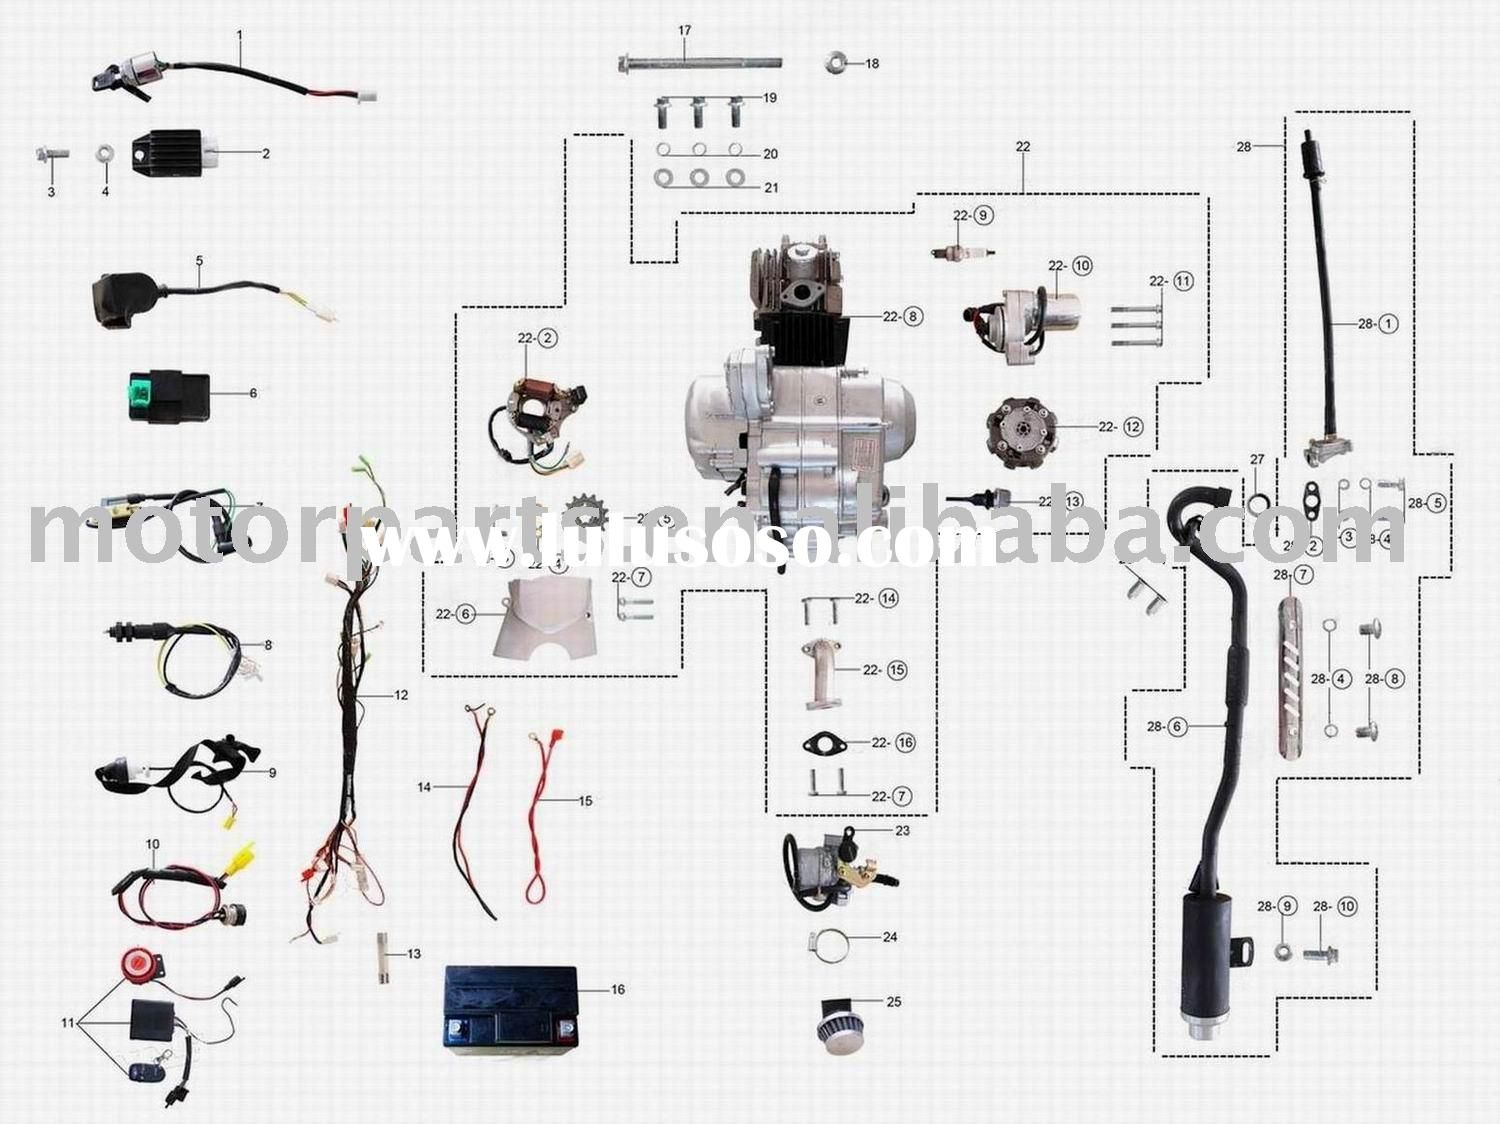 110 Wiring Diagram | Wiring Diagram - 110Cc Atv Wiring Diagram